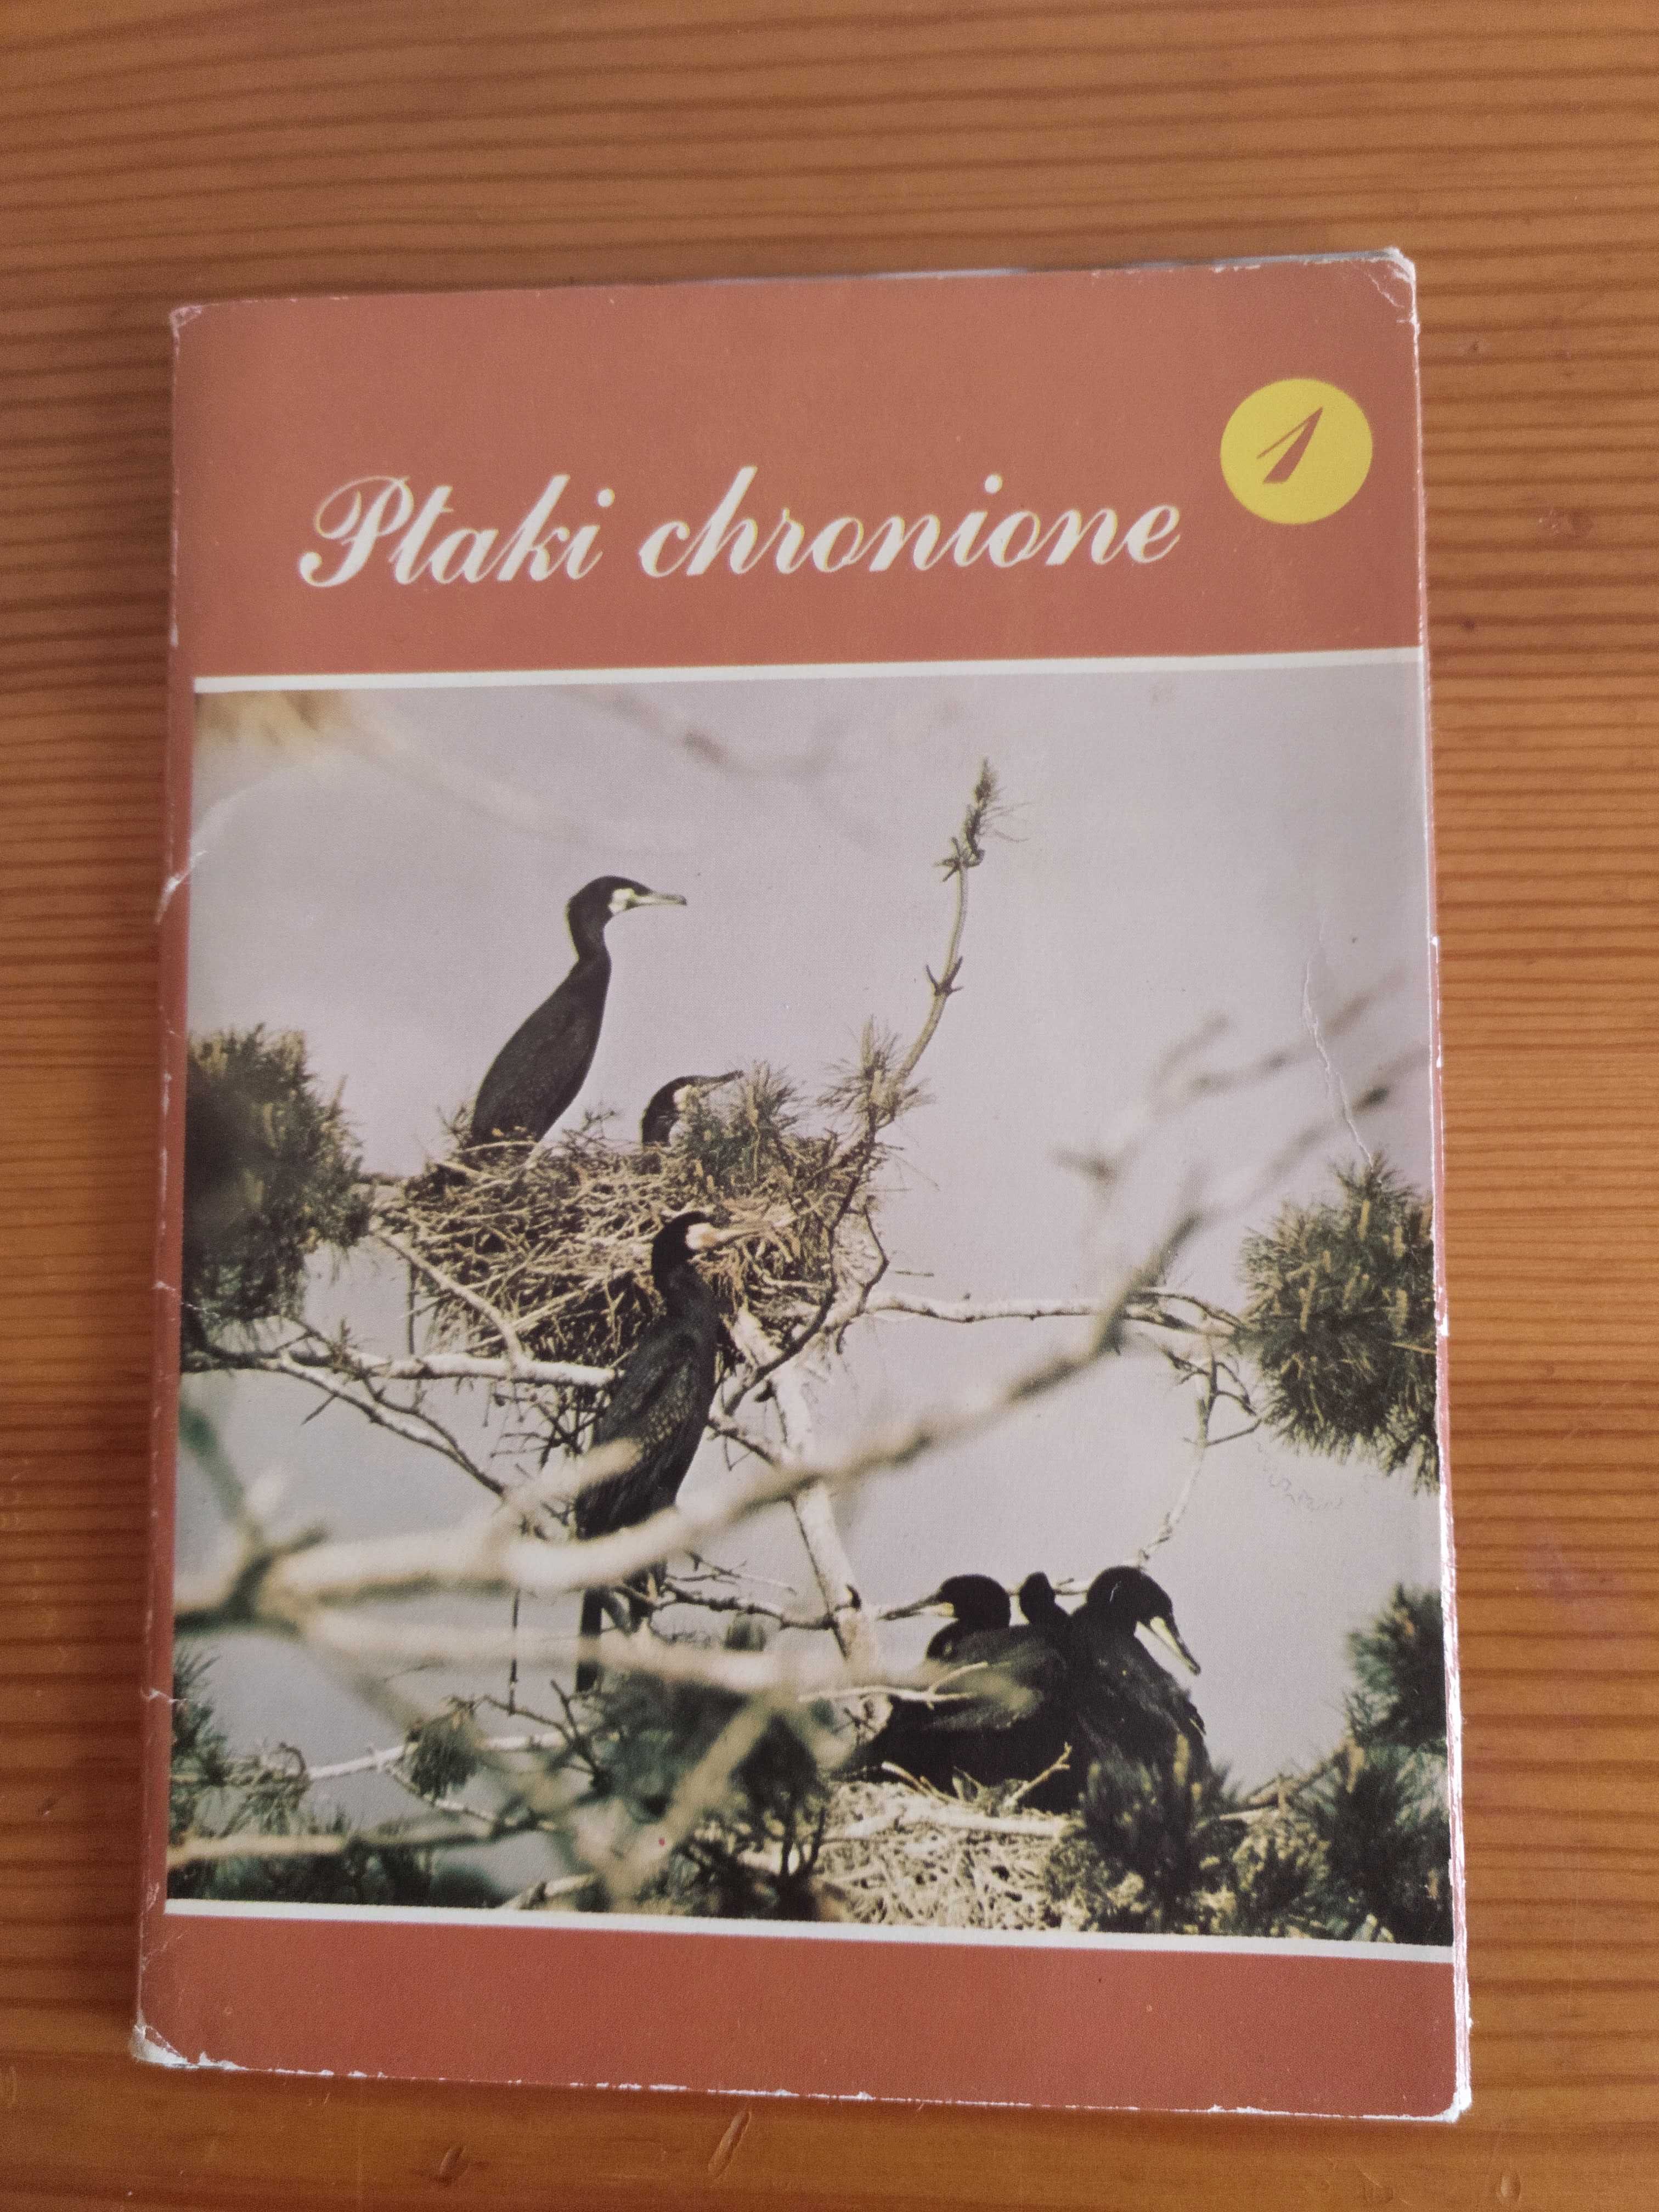 Ptaki chronione 7 szt. w obwolucie, pocztówki z PRL-u wydawnictwo KAW